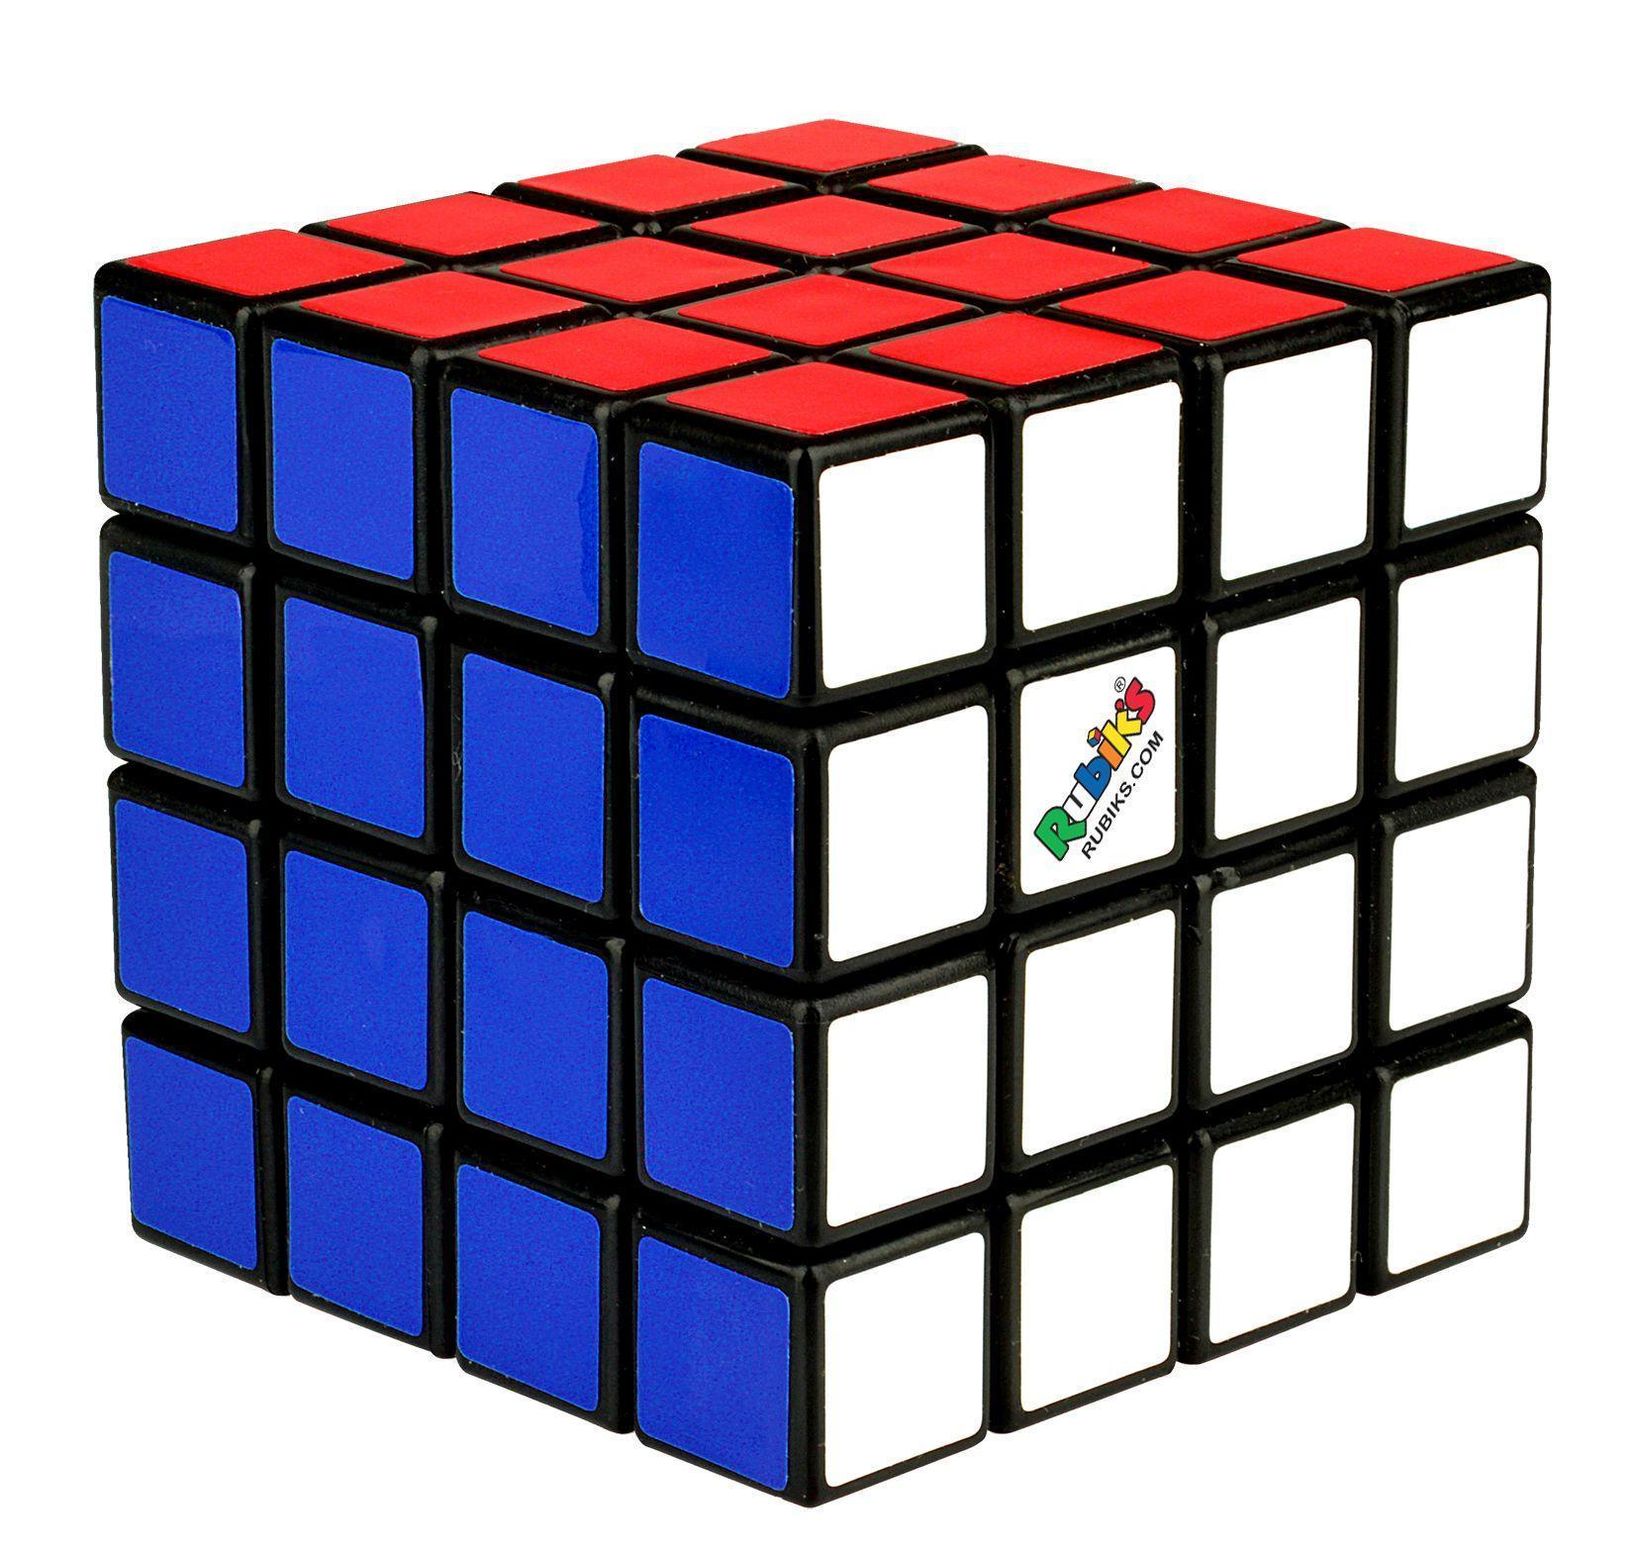 Thinkfun - 76400 - Rubik's Master, Zauberwürfel im 4x4 Format, größere  Herausforderung als der original Rubik's Cube 3x3 | Weltbild.at